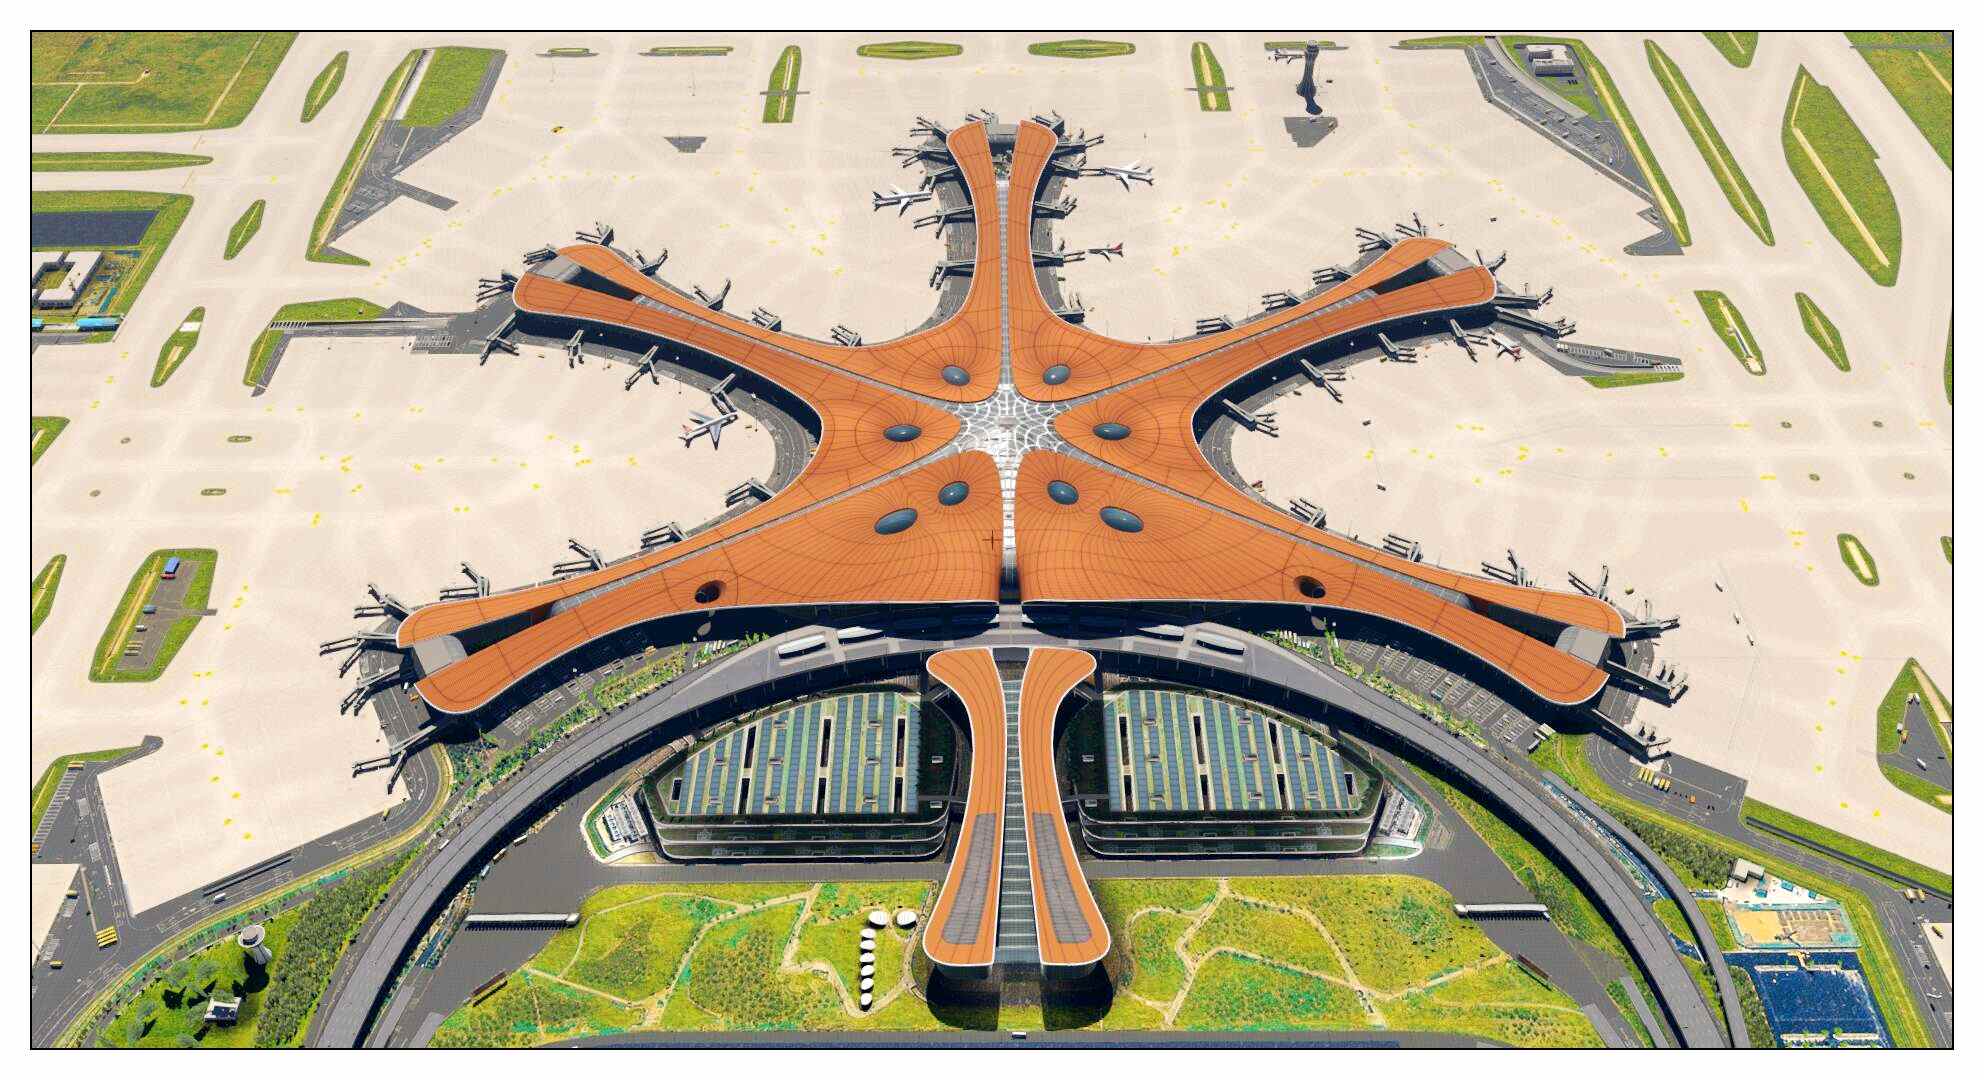 【X-Plane】ZBAD北京大兴国际机场-正式发布-6748 